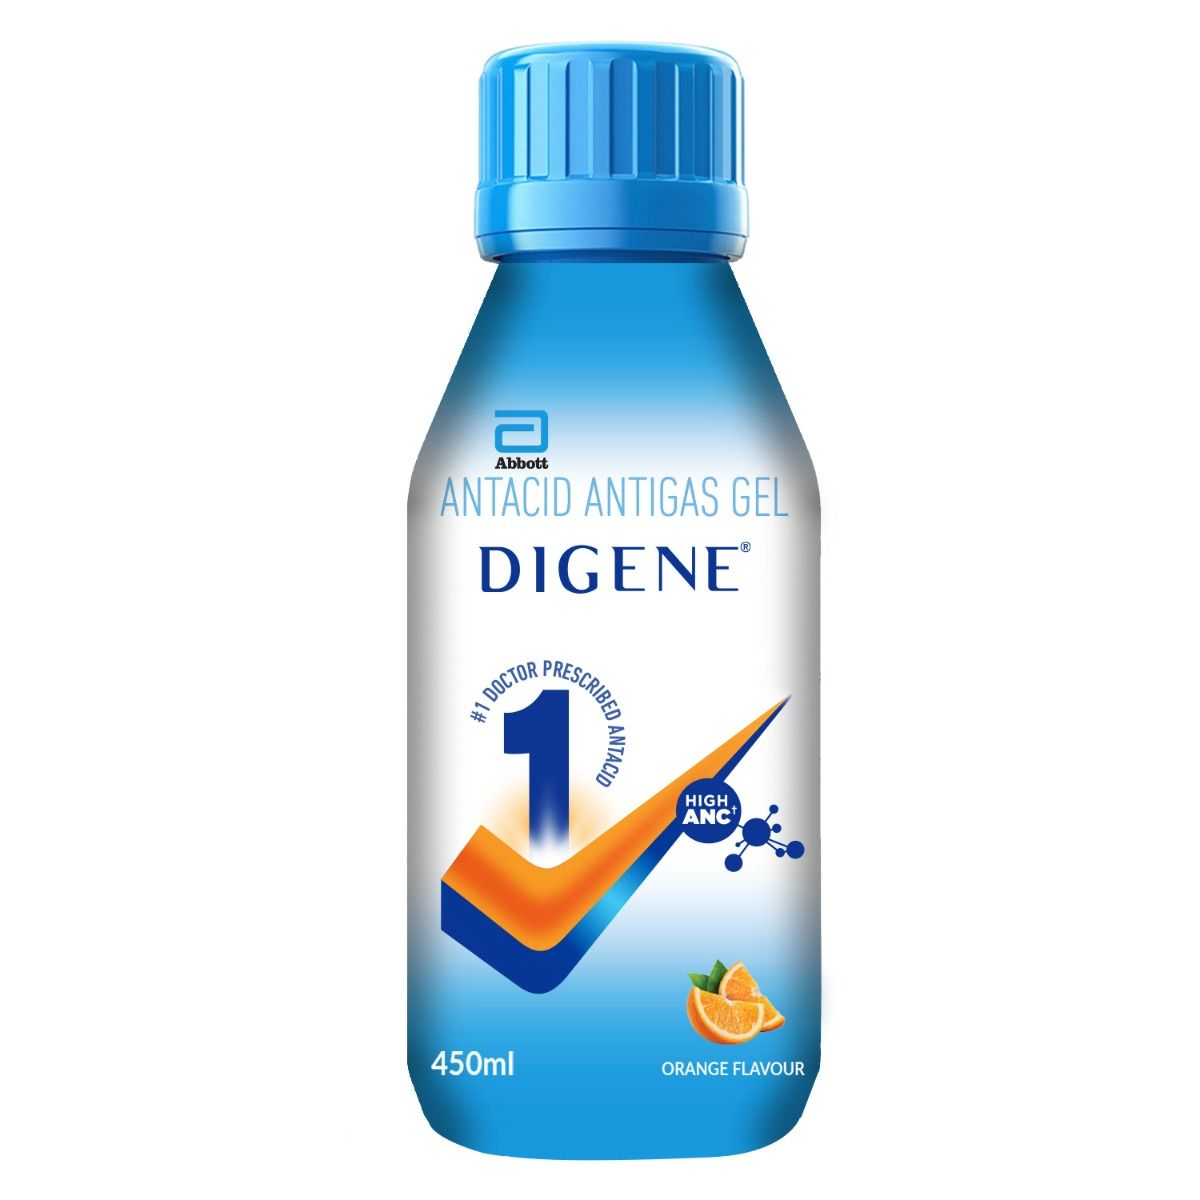 Buy Digene Antacid Antigas Gel Orange Flavour, 450 ml Online